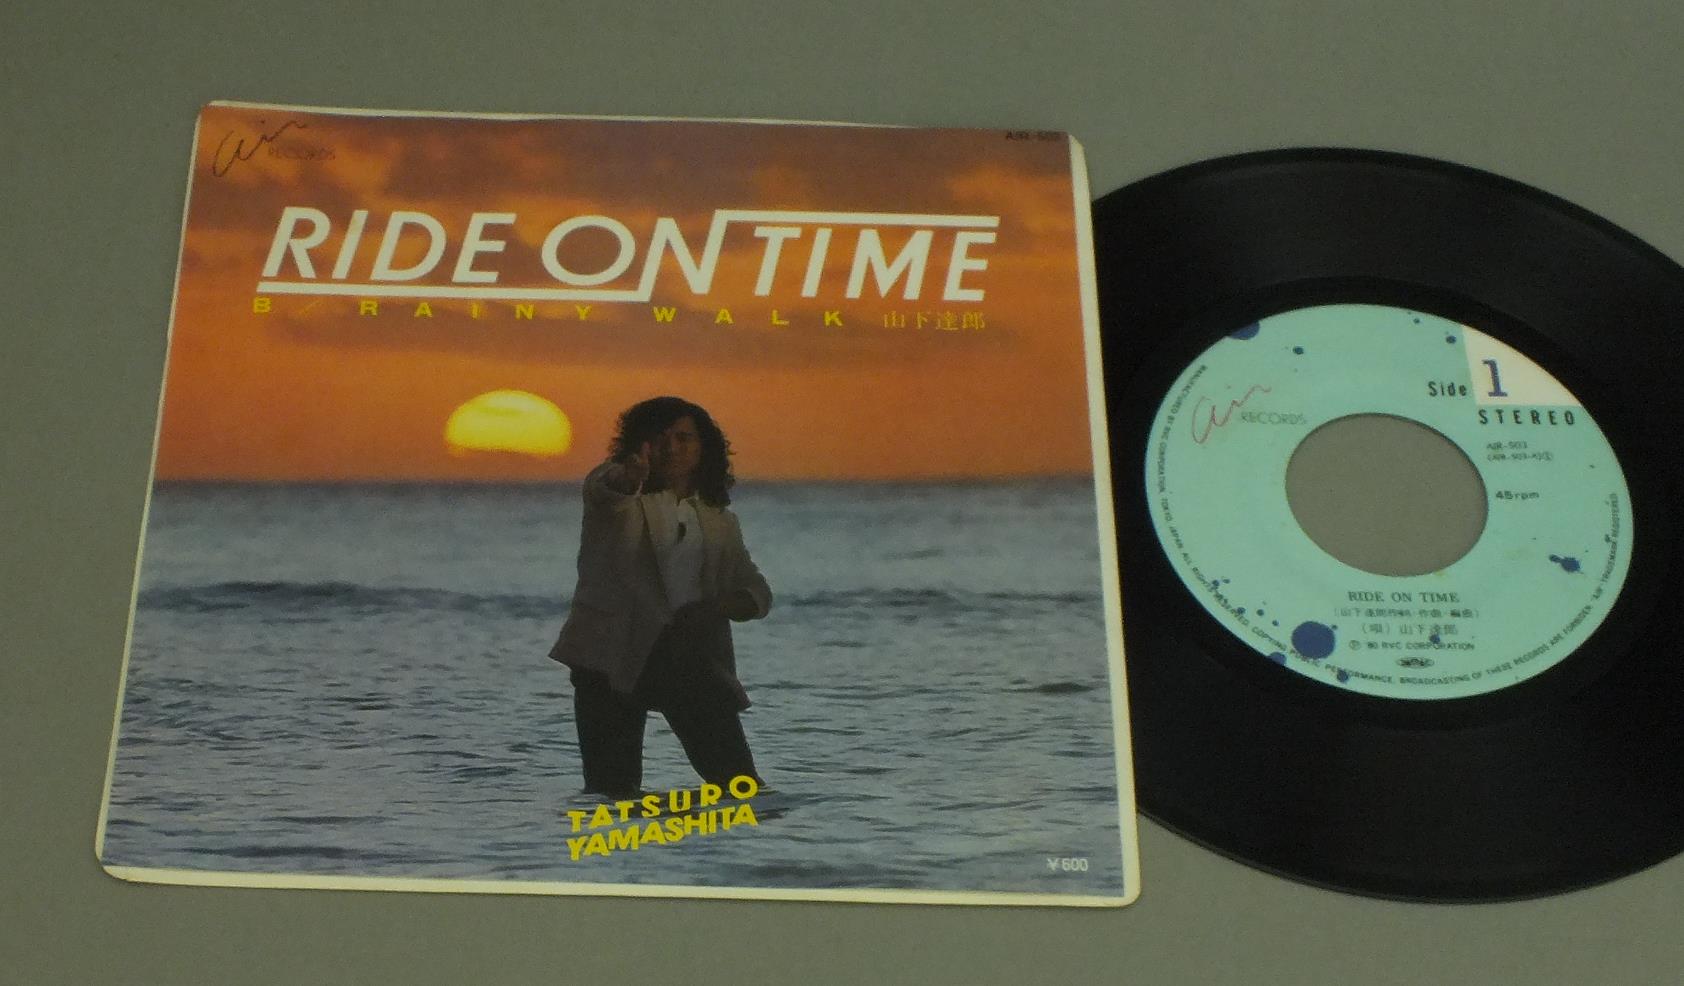 山下達郎 TATSU YAMASHITA RIDE ON TIME 80年代 レコード レコード